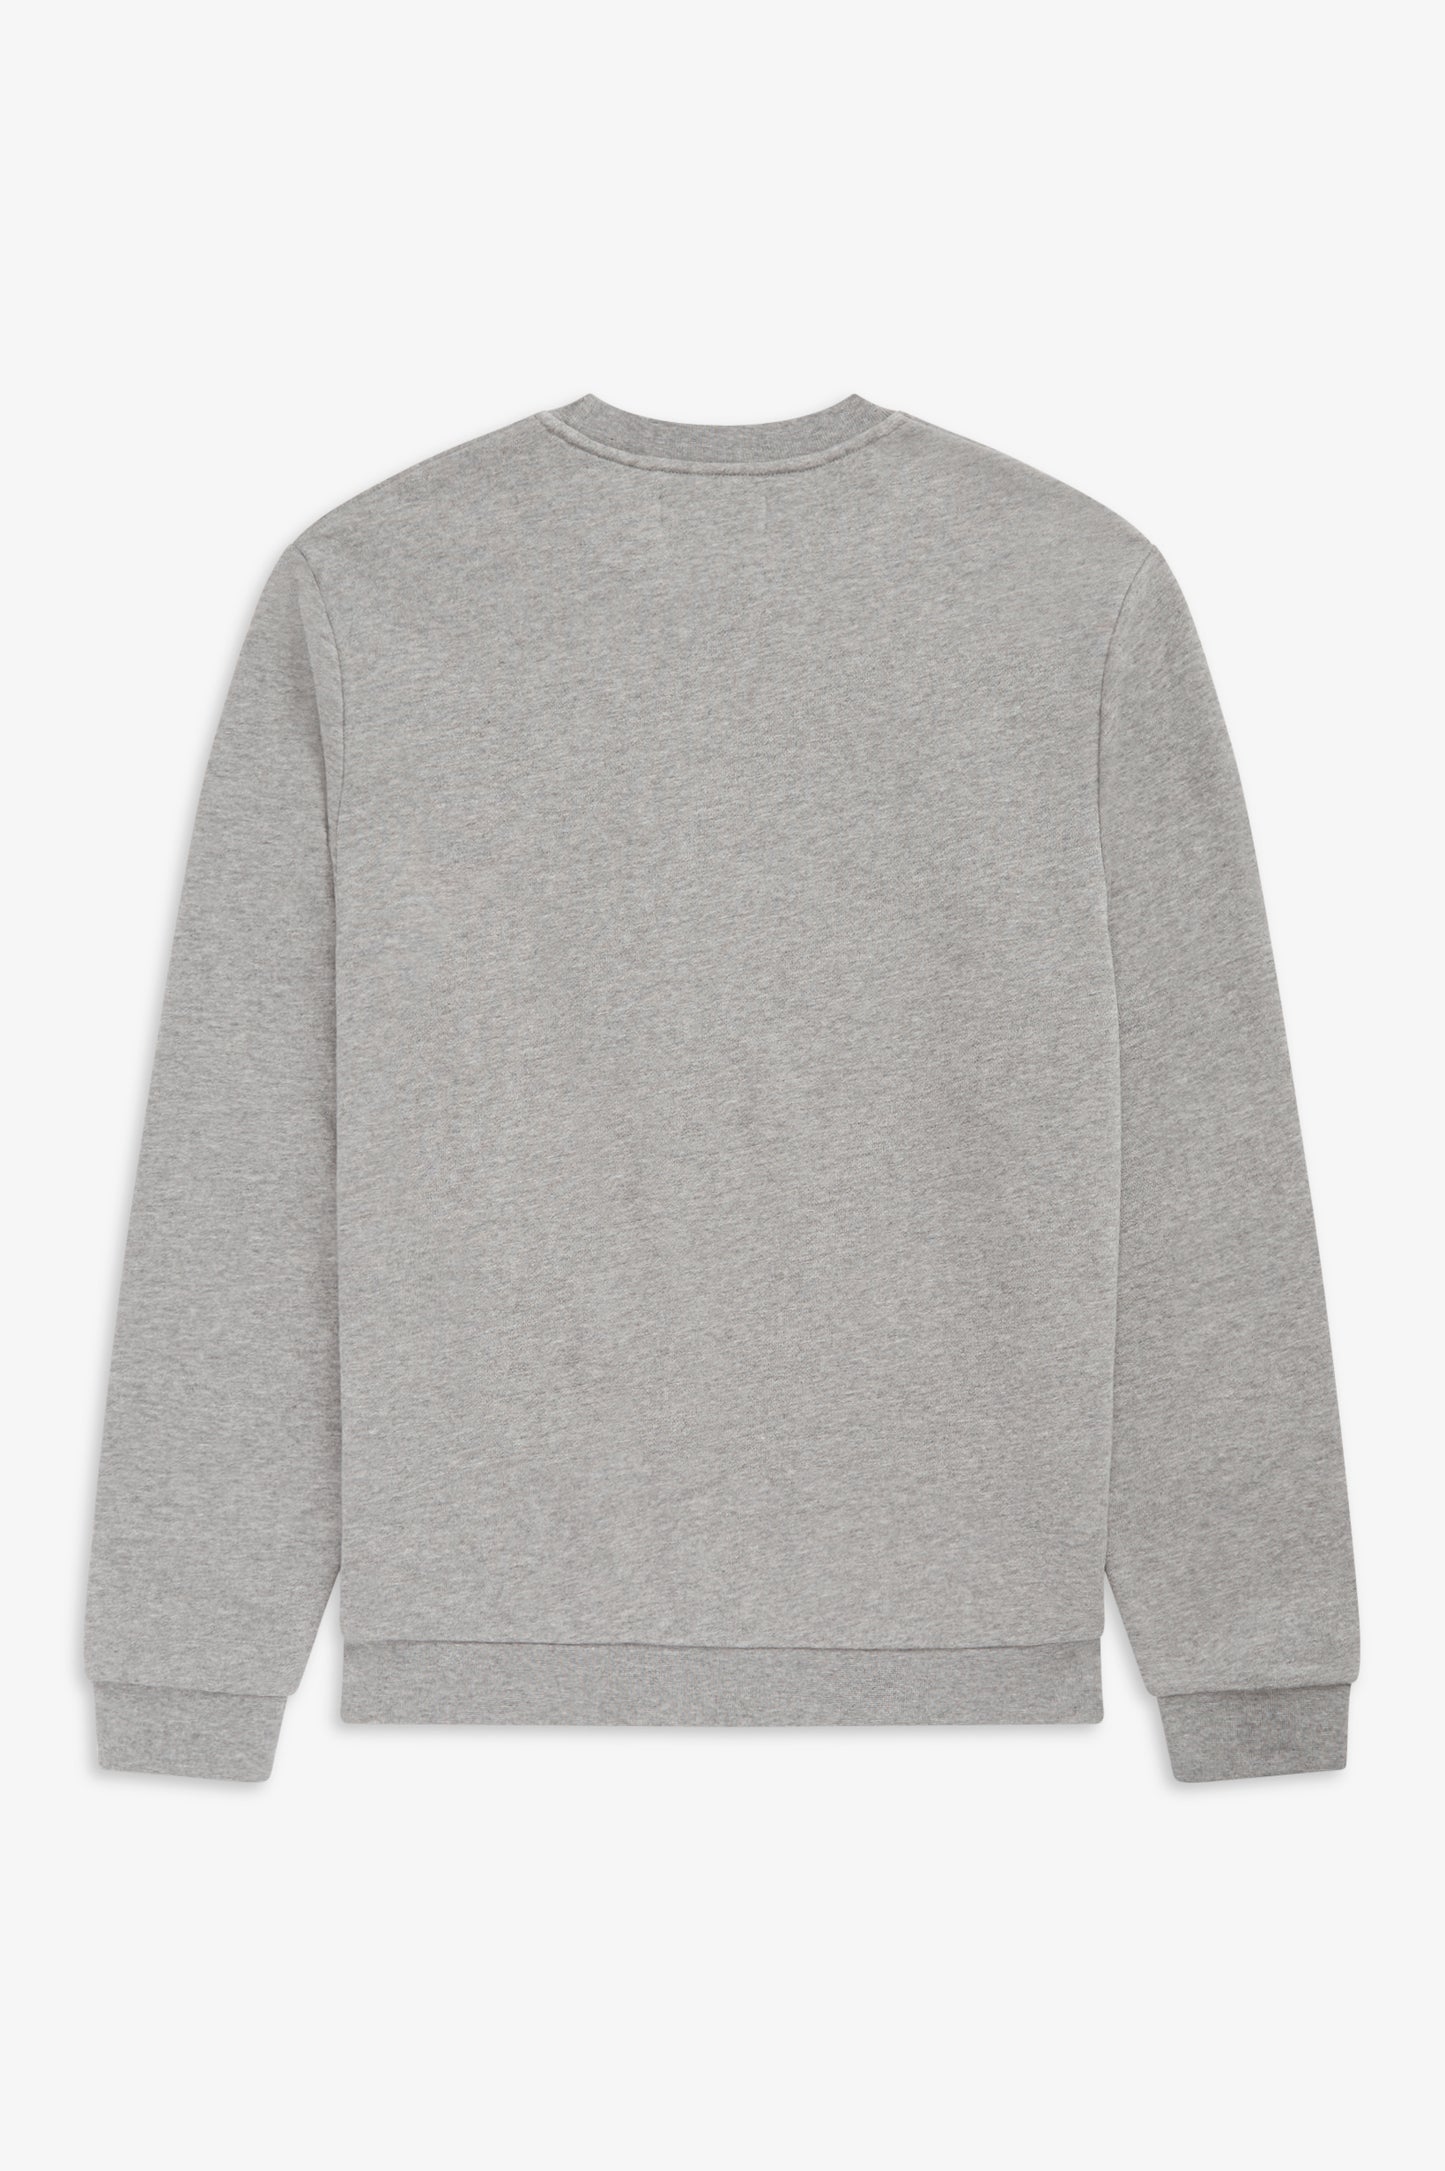 Embroidered Sweatshirt (grey)